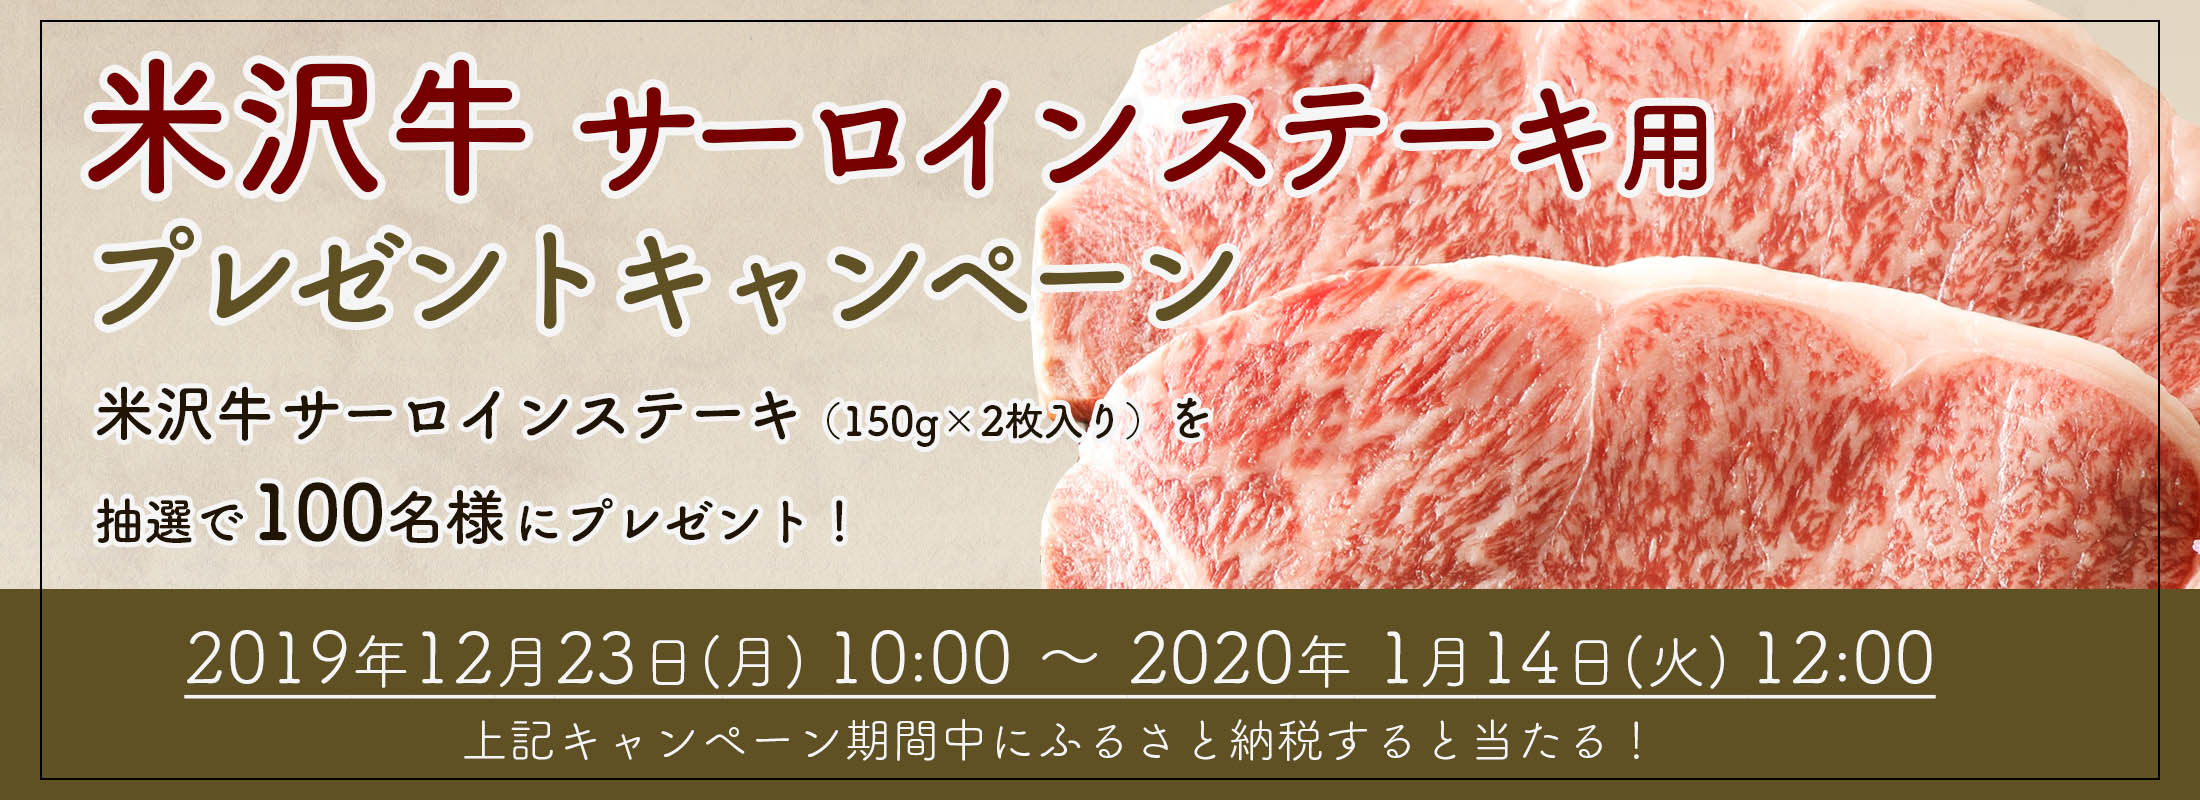 米沢牛サーロインステーキ プレゼント・キャンペーン